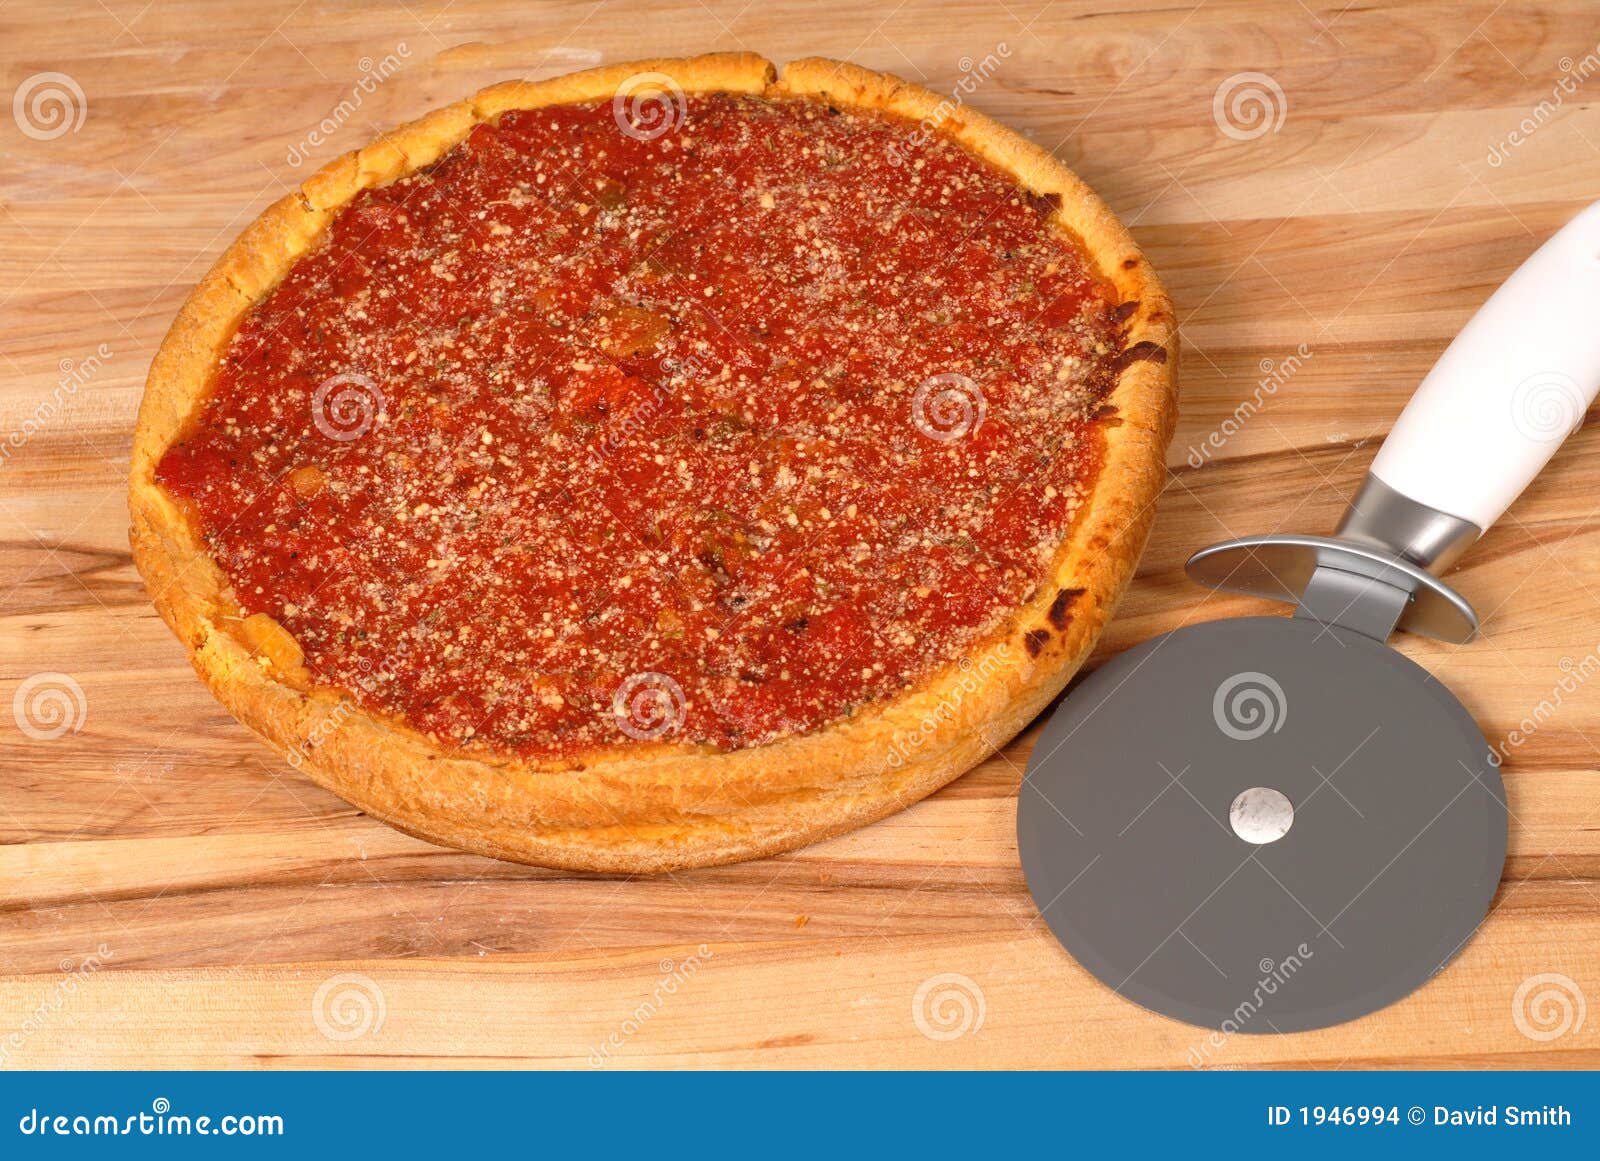 юлия высоцкая рецепт пиццы фото 112